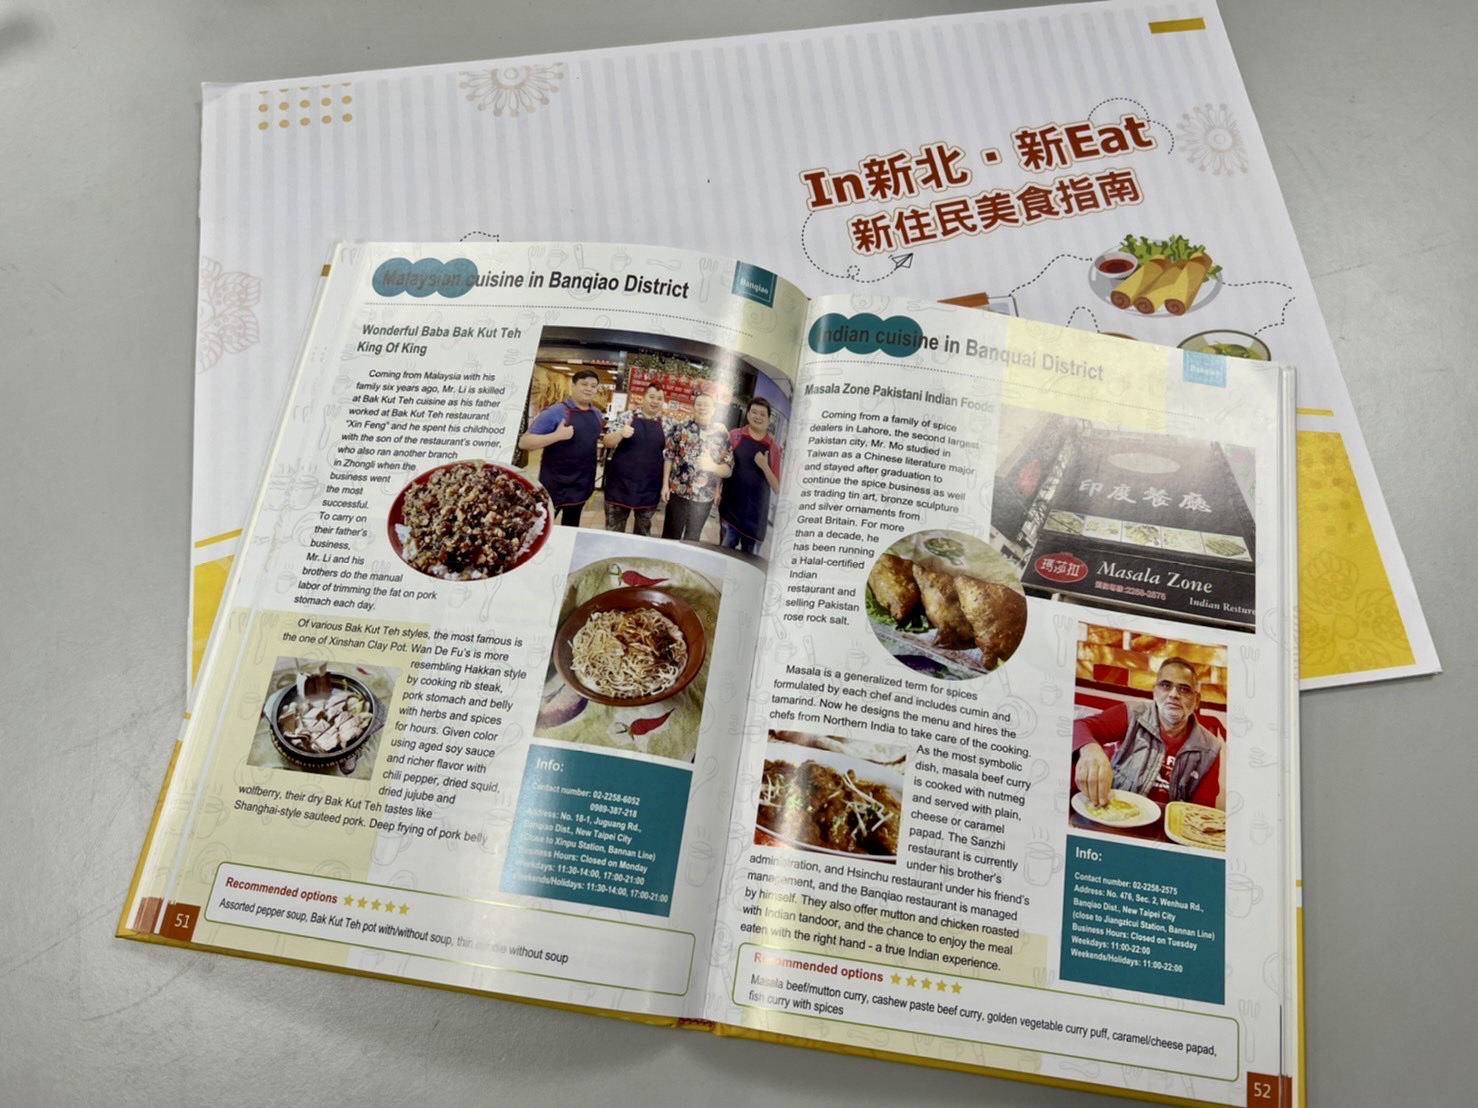 經發局針對新北市東南亞美食餐廳、小吃店進行全面盤點及訪查，匯集了在新北市的50個東南亞異國美食店家，推出中、英版美食電子手冊